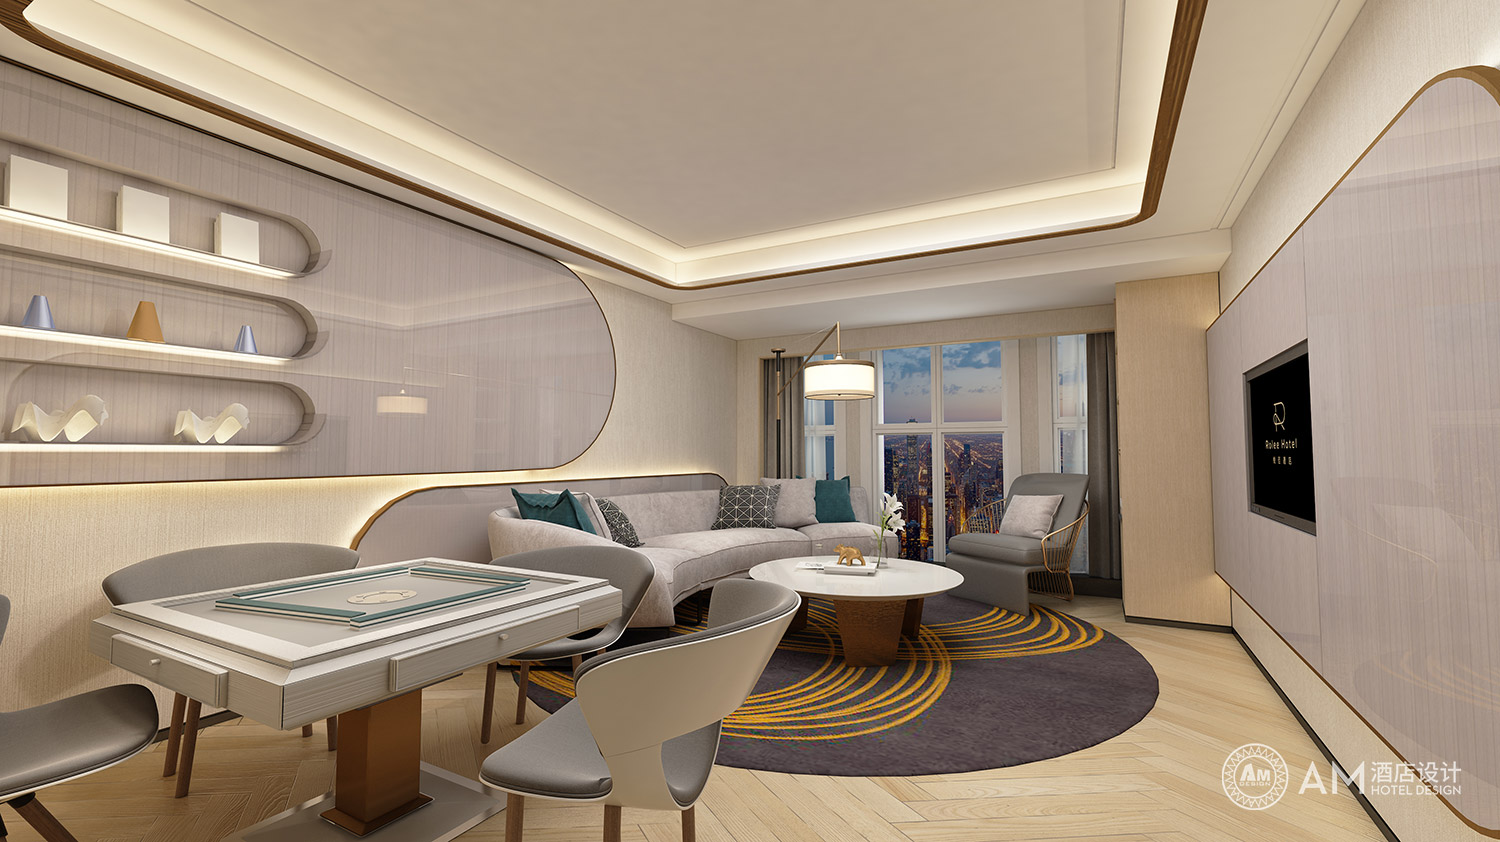 AM DESIGN | Xi'an Yuelai Hotel Guest Room Design